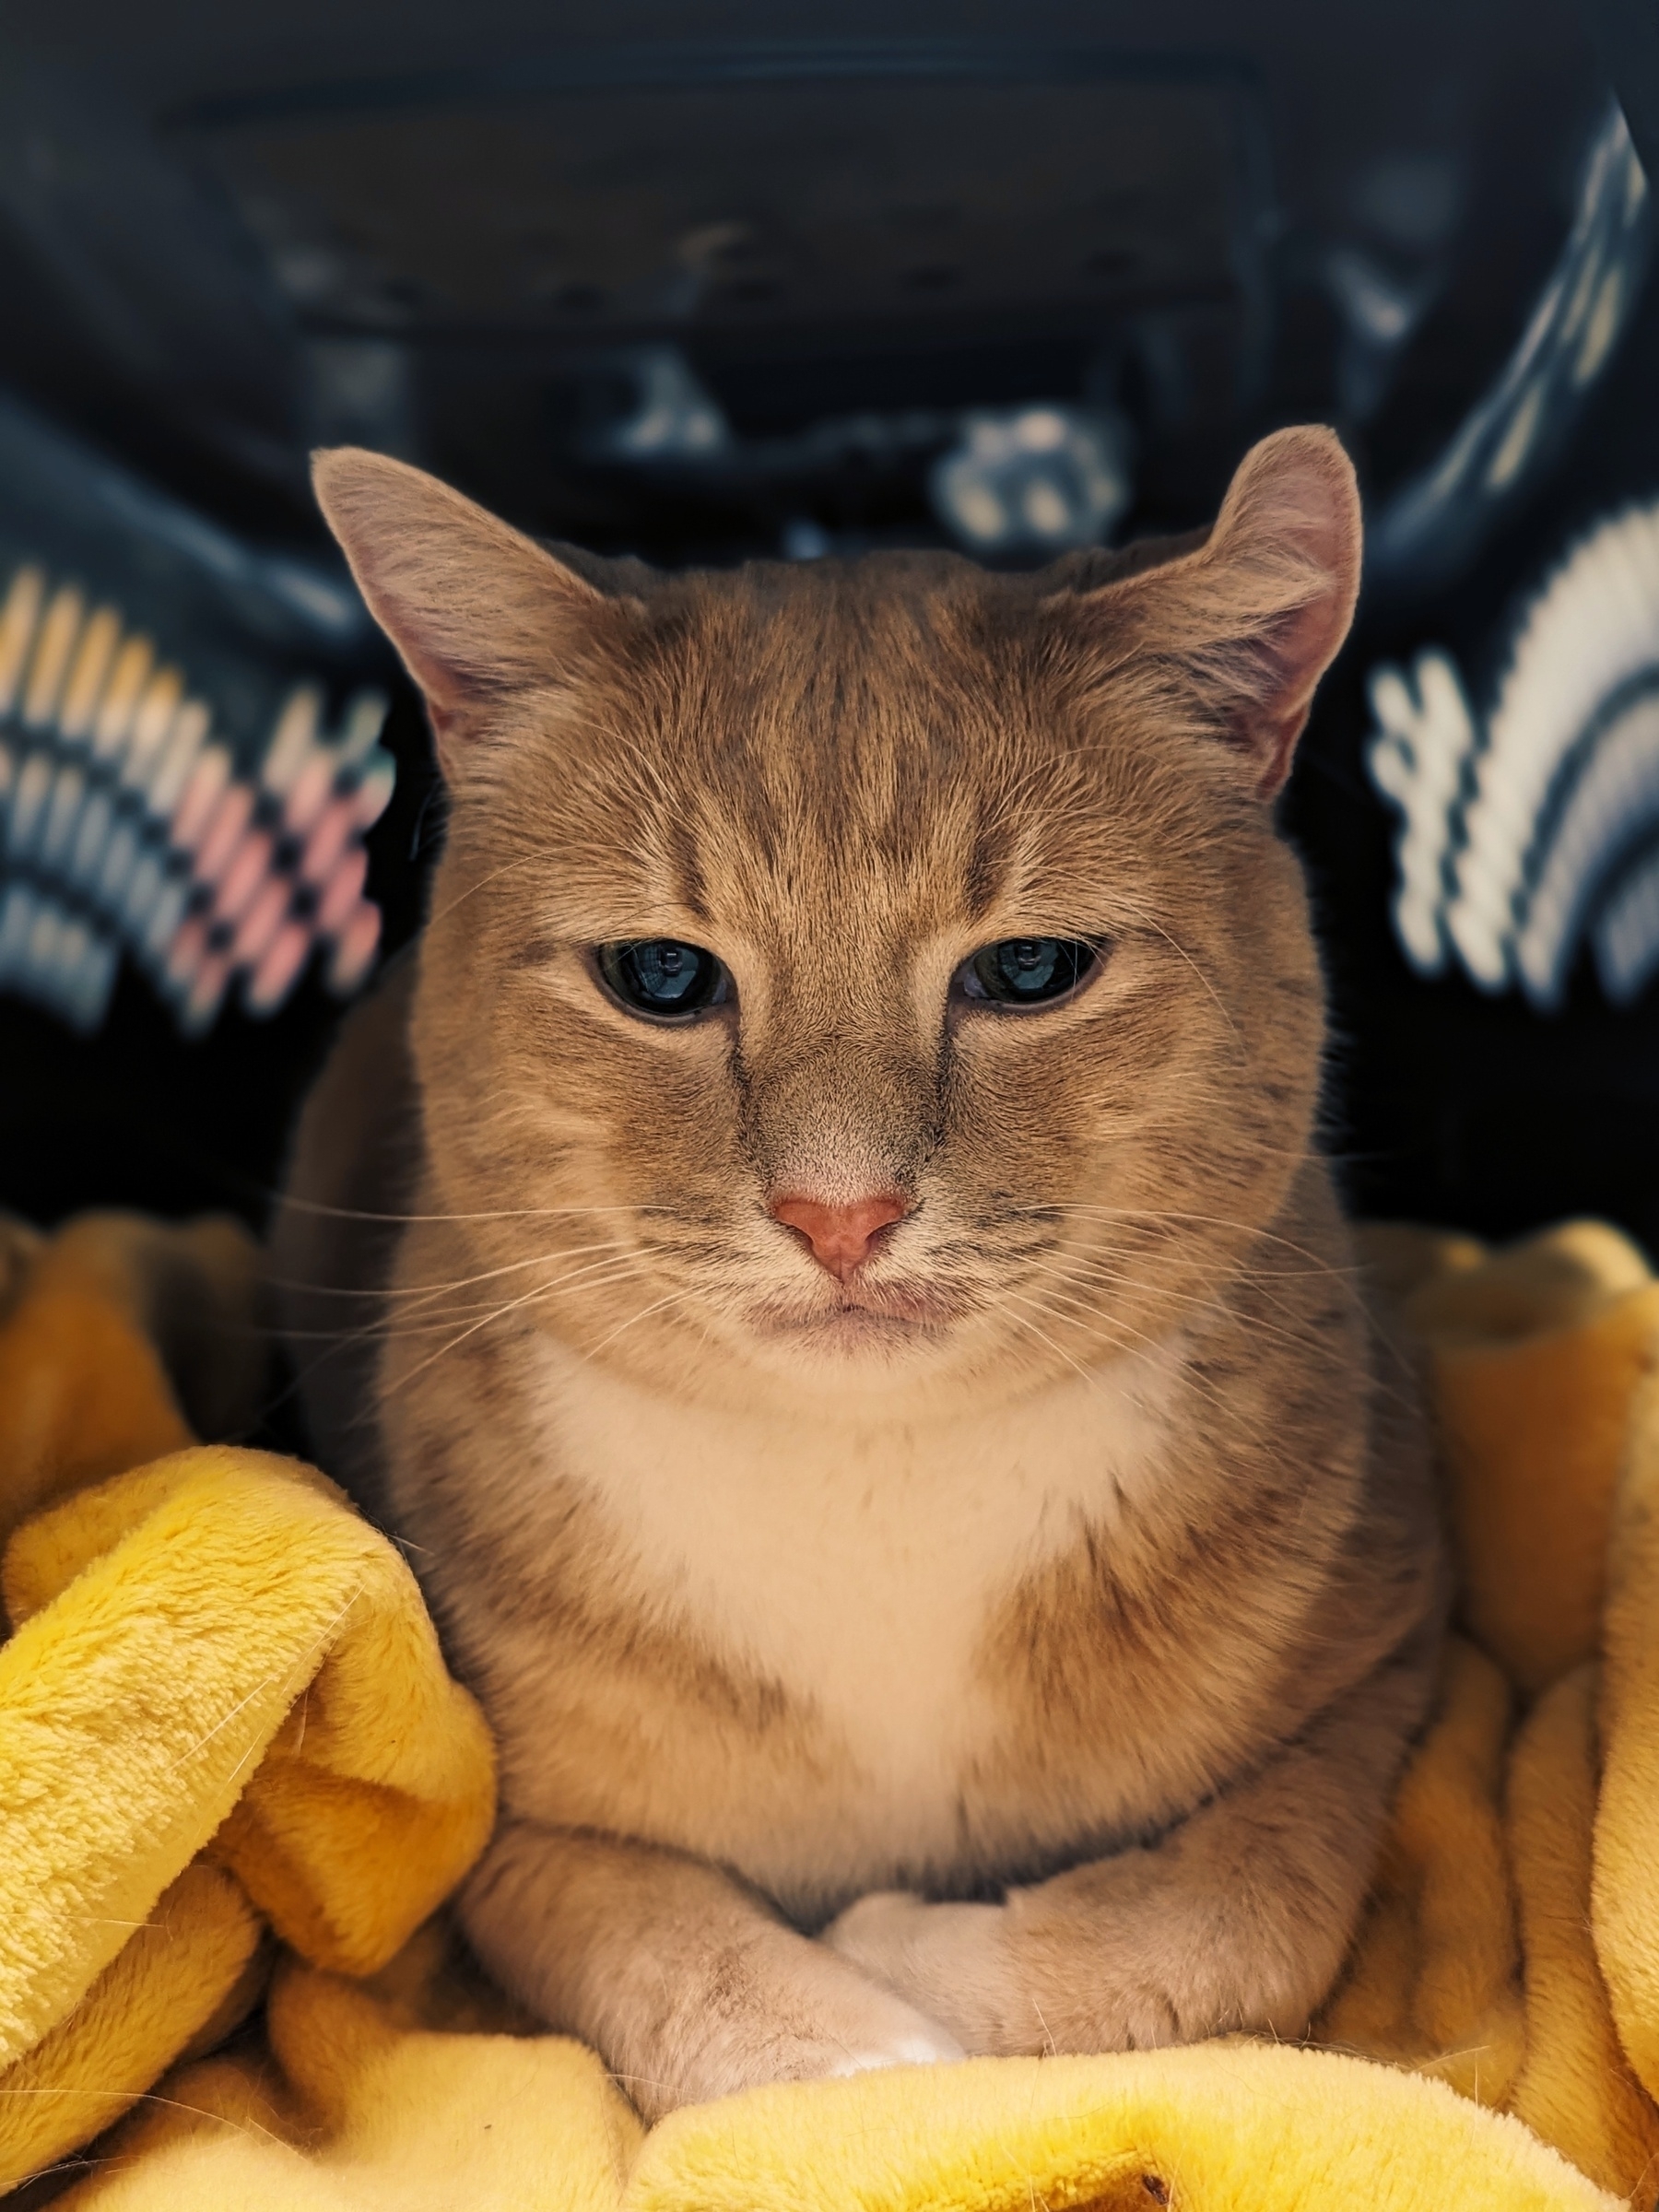 Orange cat in cat carrier